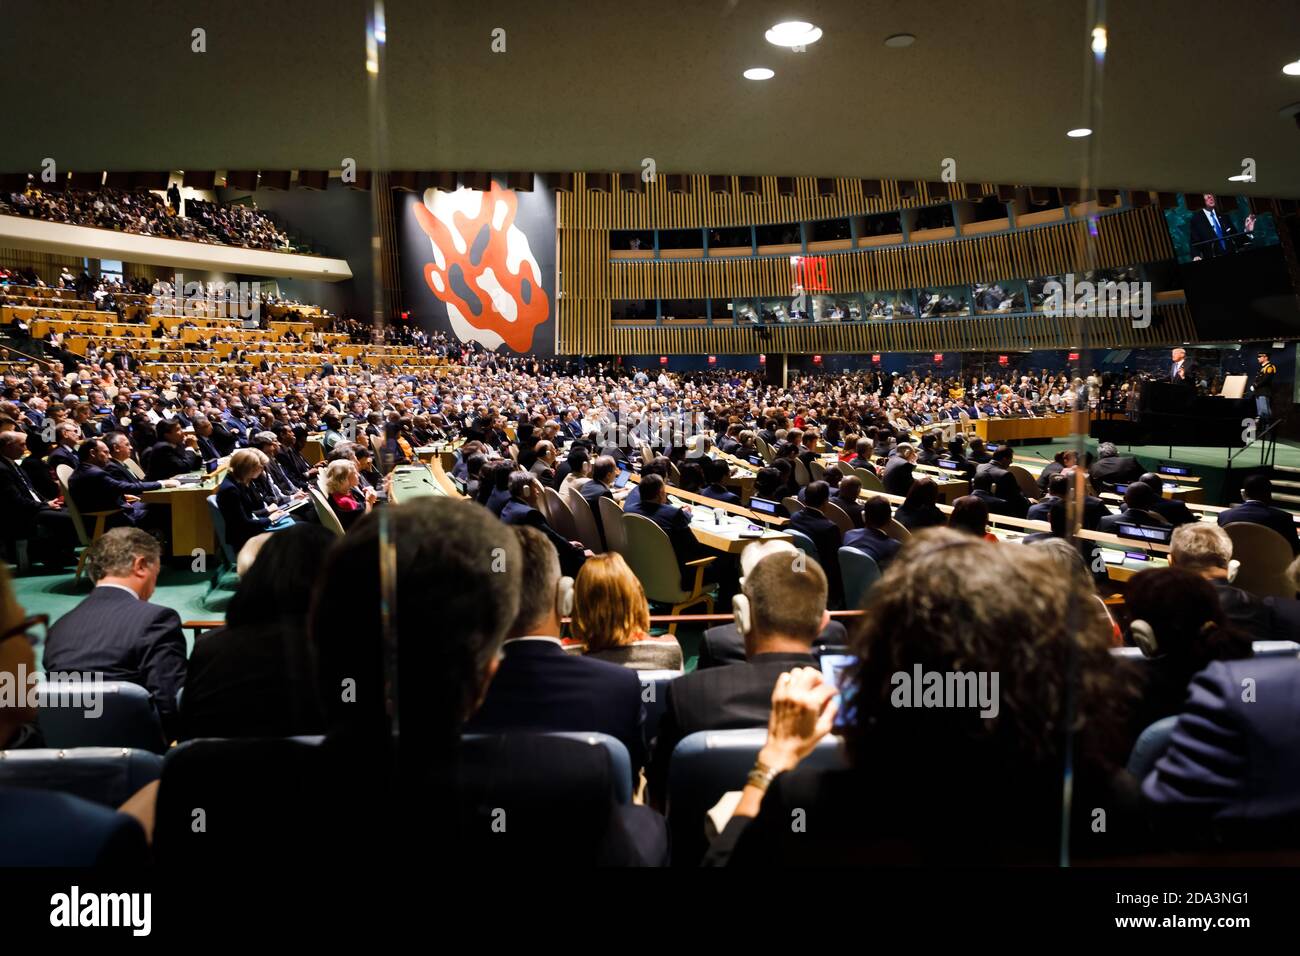 NUEVA YORK, EE.UU. - 19 de septiembre de 2017: Sala de Conferencias de la Organización de las Naciones Unidas durante un discurso del Presidente de los Estados Unidos de América Donald Trump Foto de stock